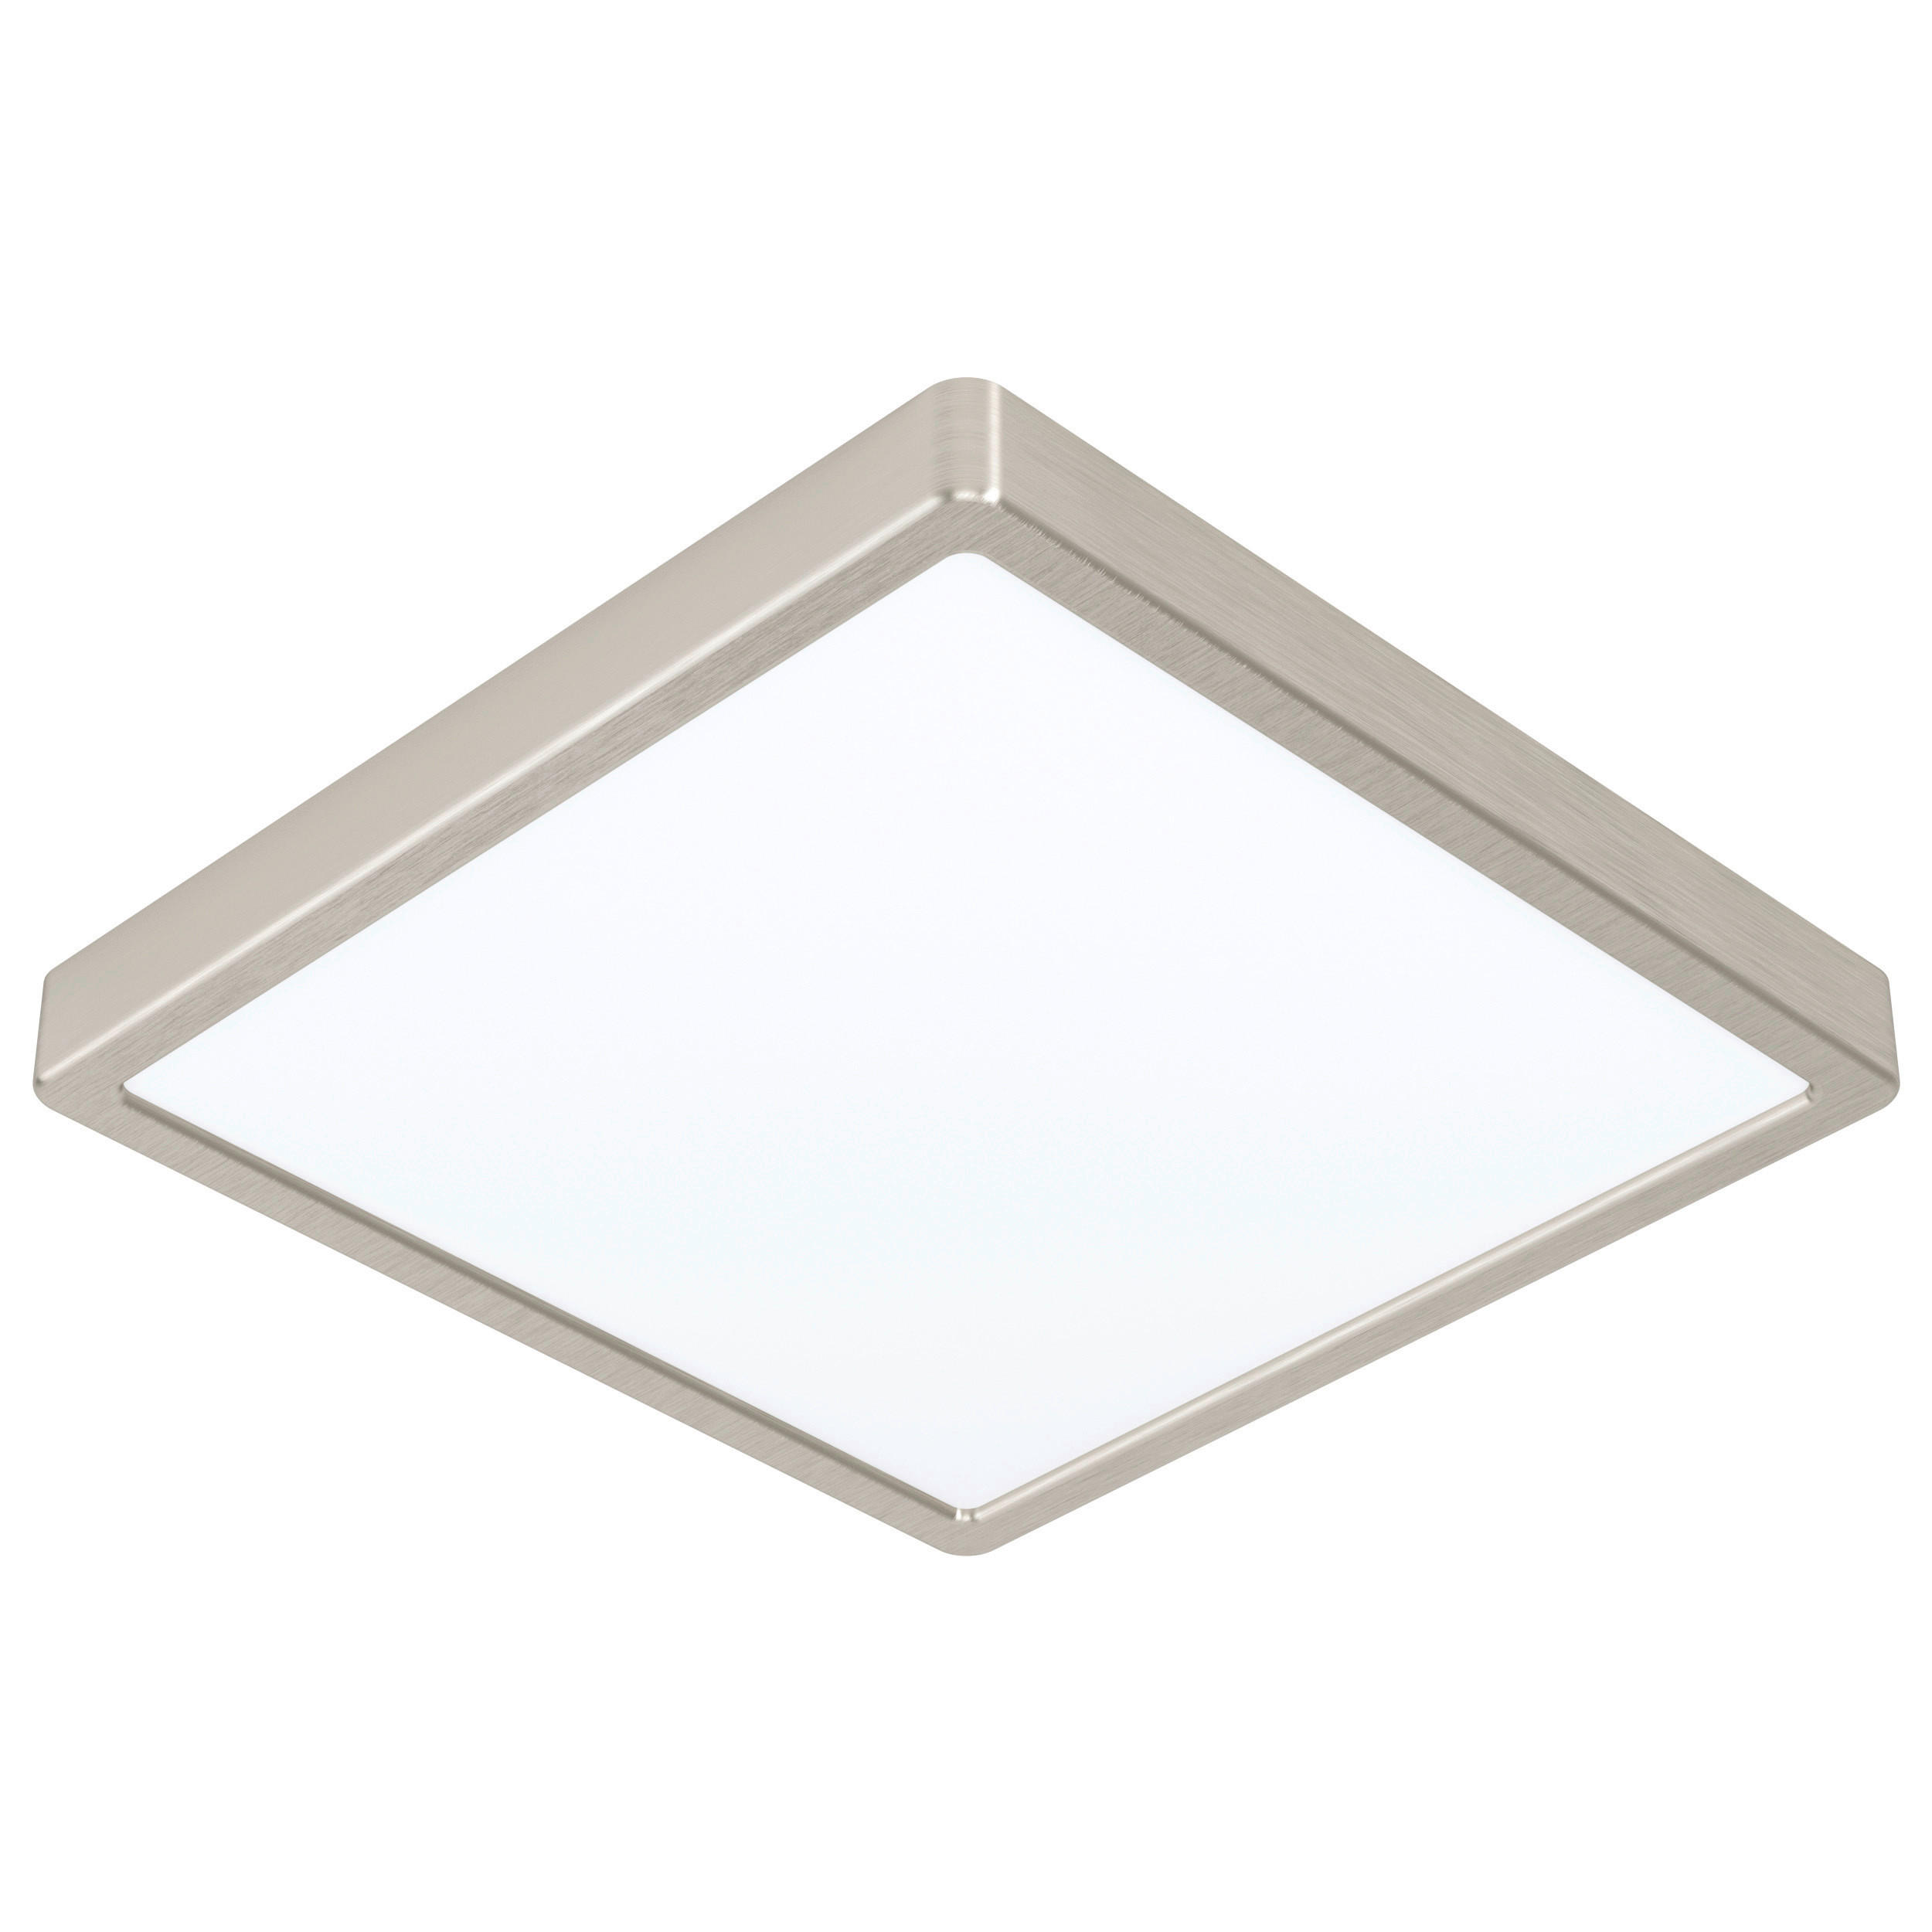 LED-DECKENLEUCHTE Fueva  - Weiß/Nickelfarben, Basics, Kunststoff/Metall (28,5/28,5/2,8cm) - Xora